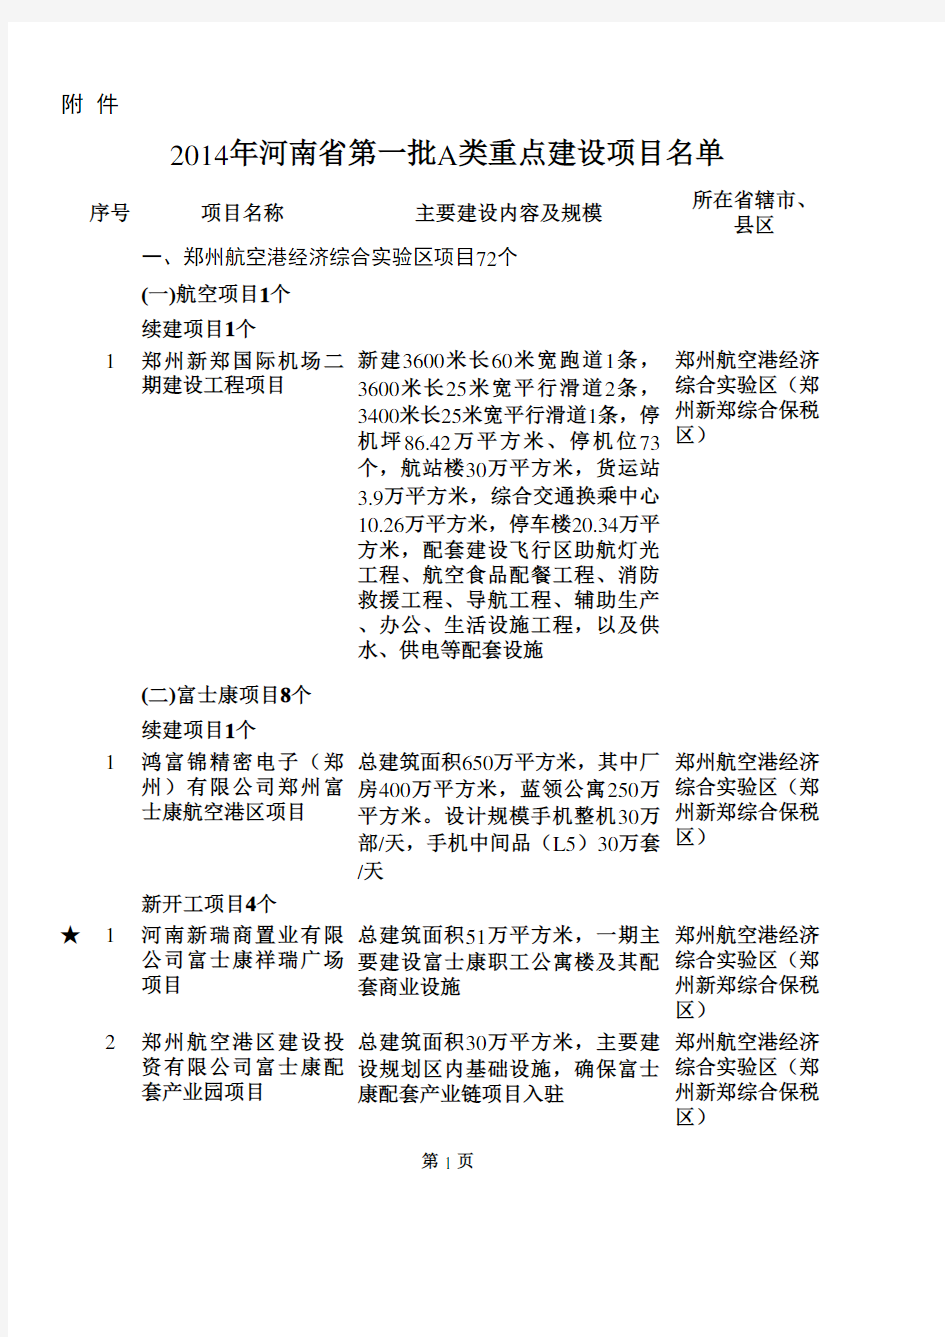 2014年河南省第一批A类重点建设项目名单